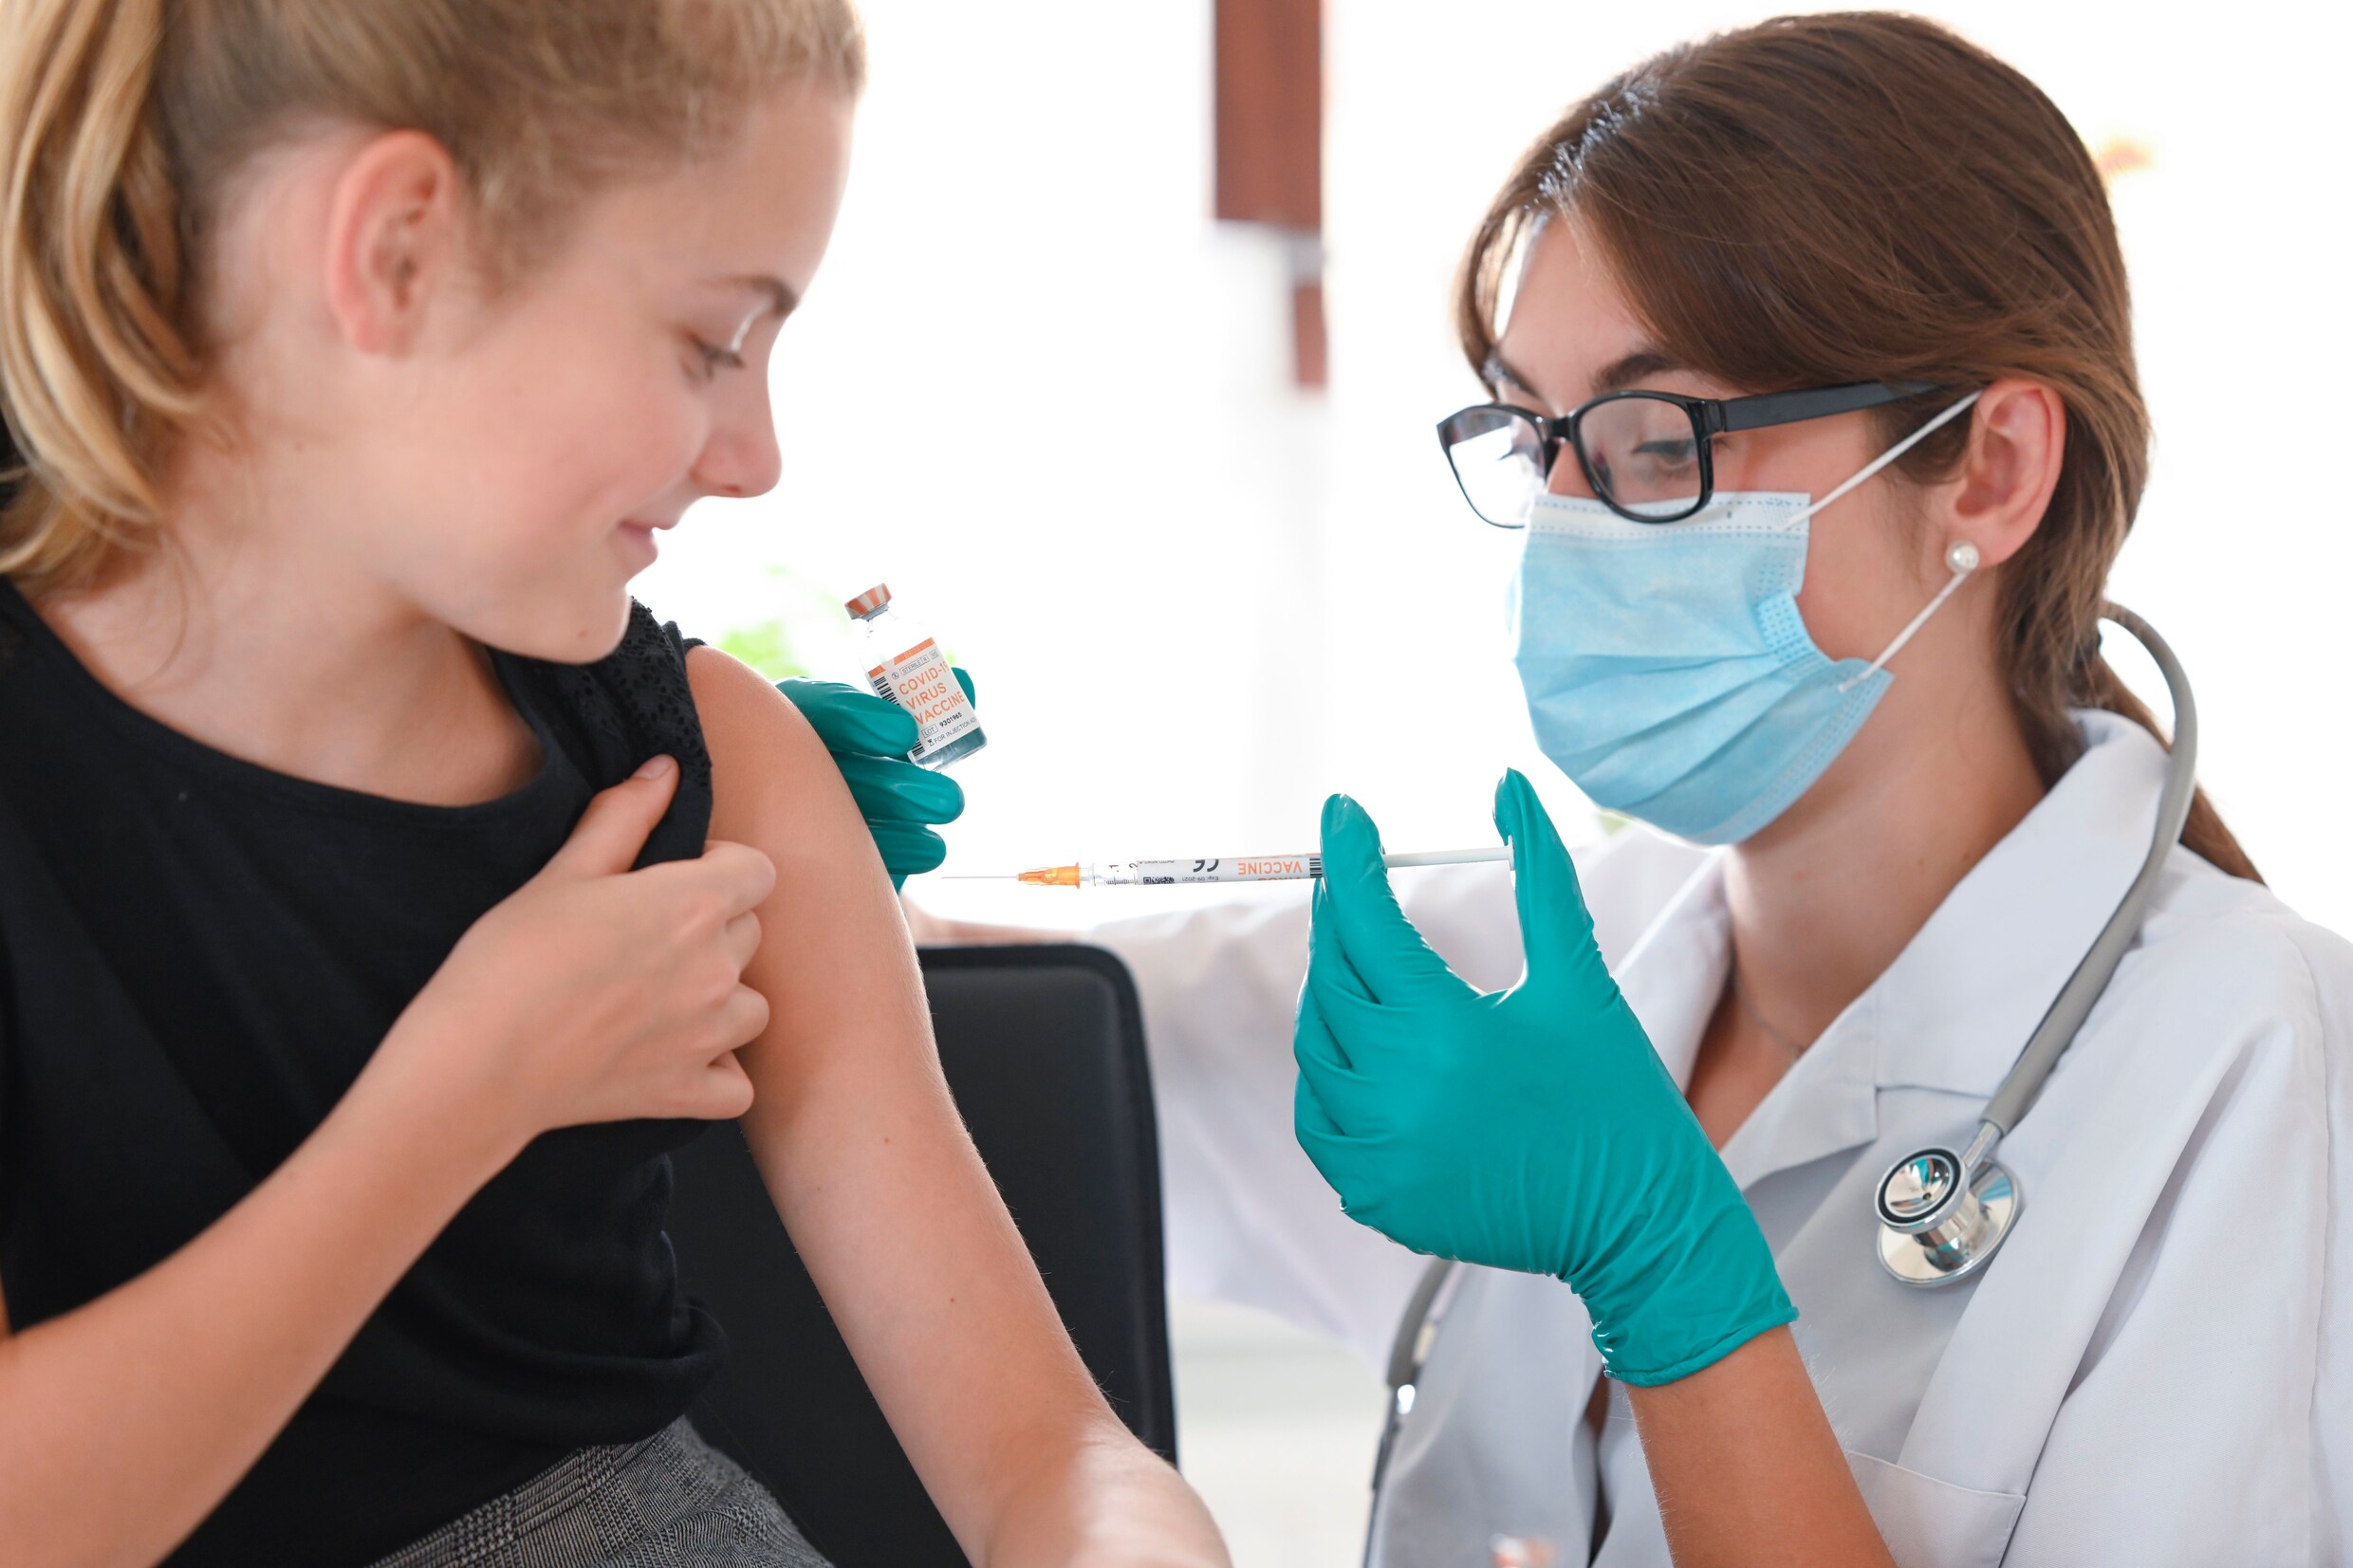 België heeft onvoldoende griepvaccins om alle risicogroepen te beschermen